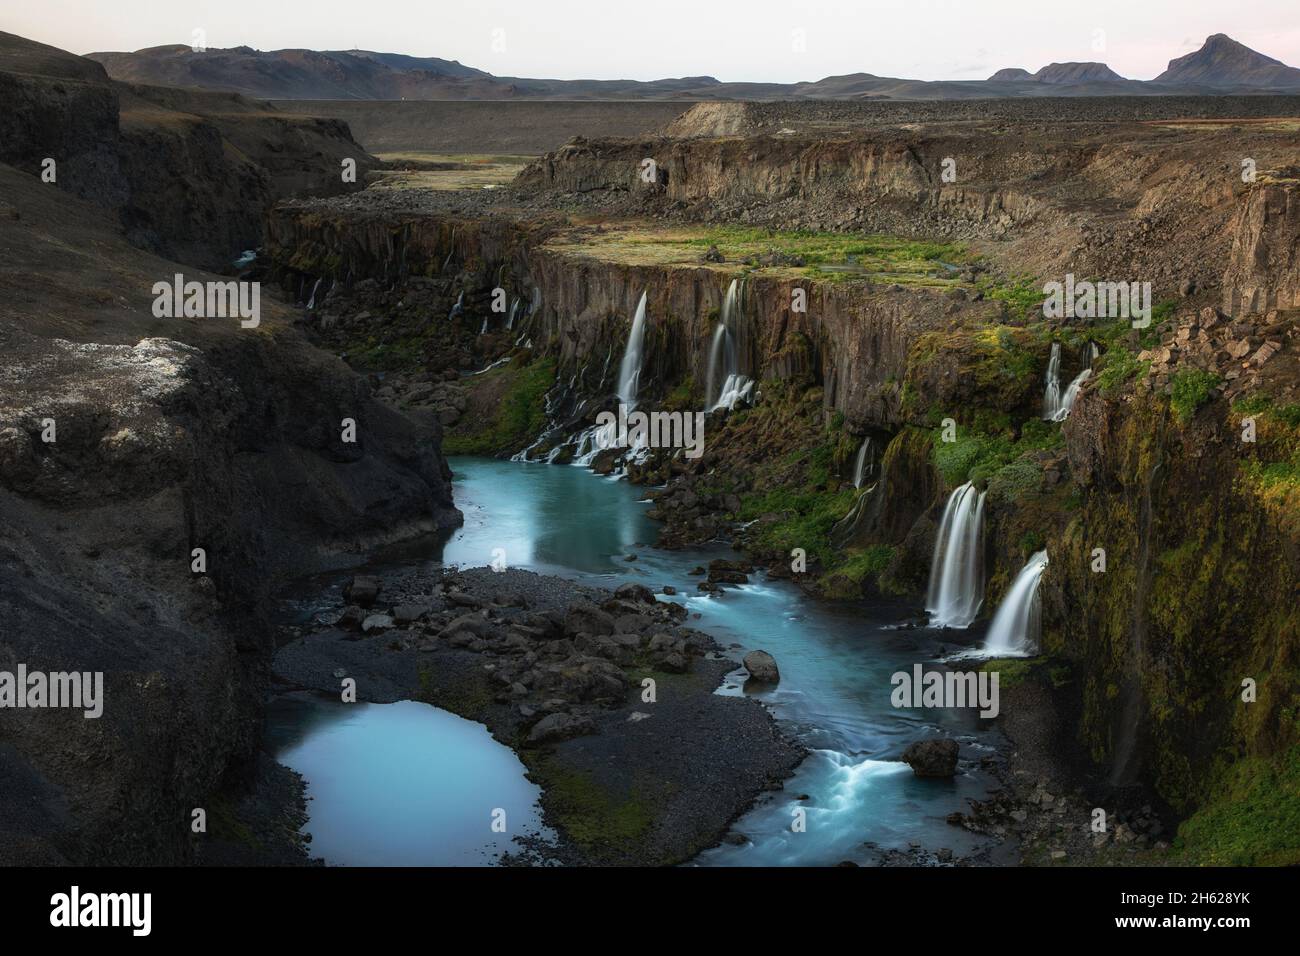 un canyon dans les hauts plateaux islandais avec des cascades. Banque D'Images